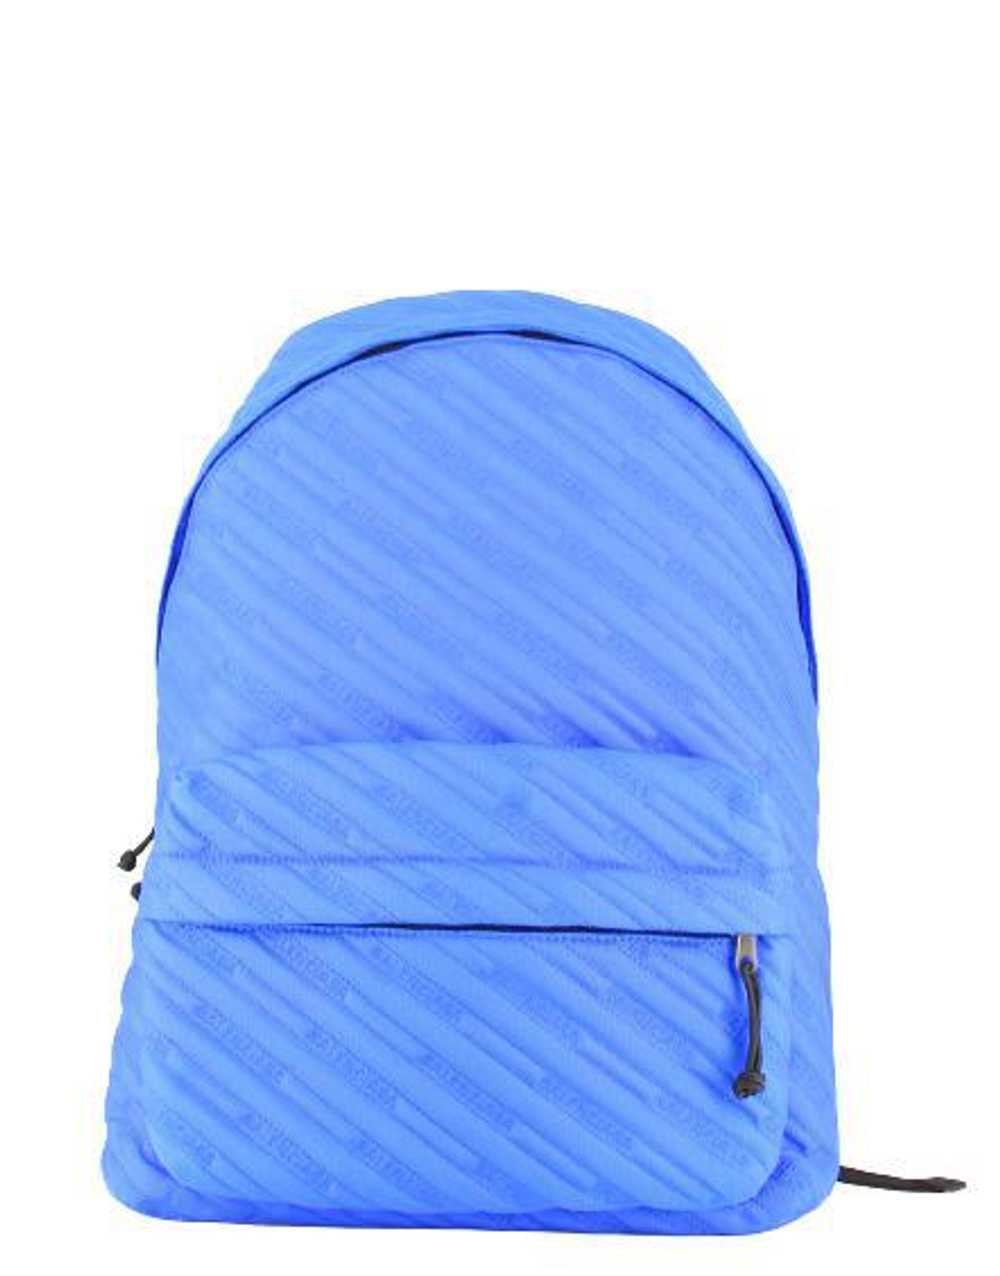 Balenciaga Blue Nylon Logo Backpack - image 1